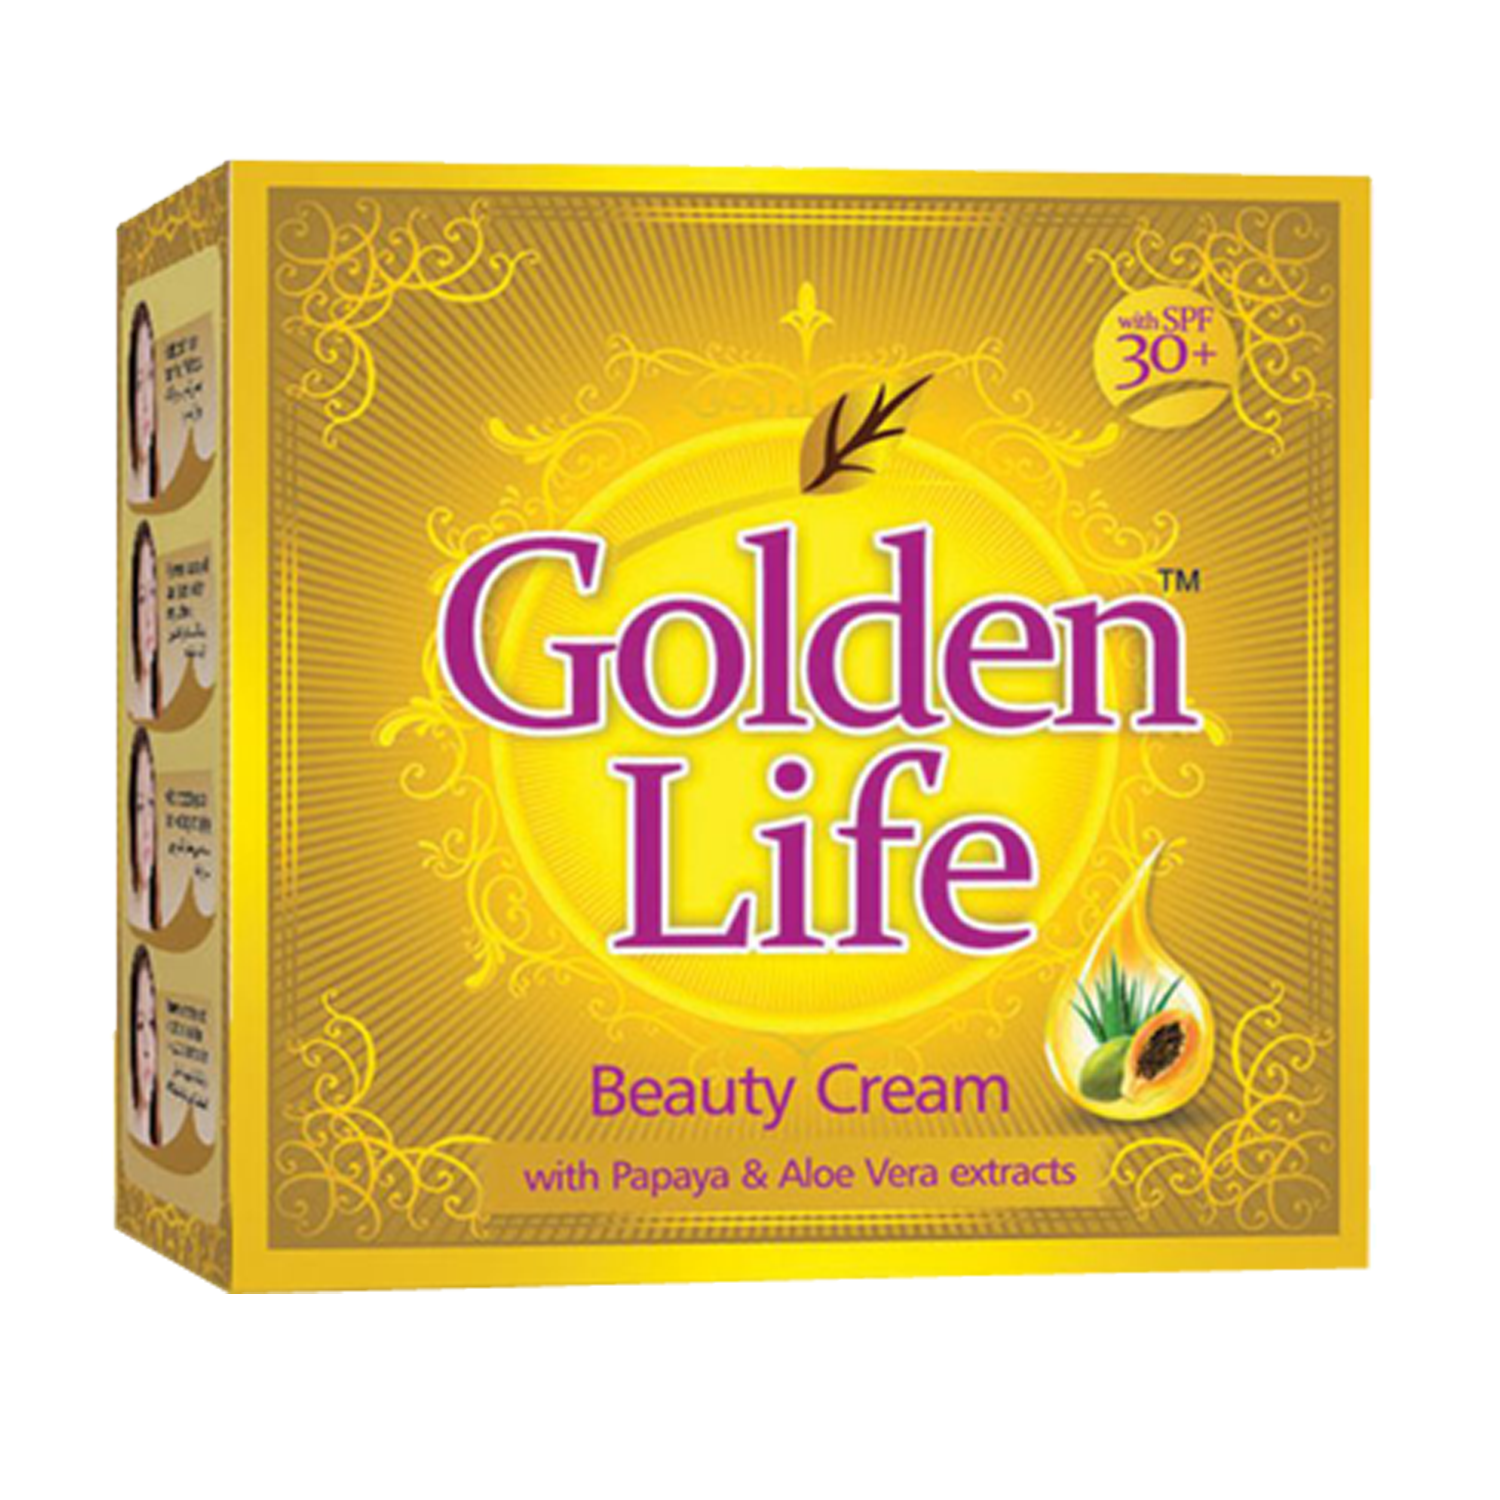 Golden life купить